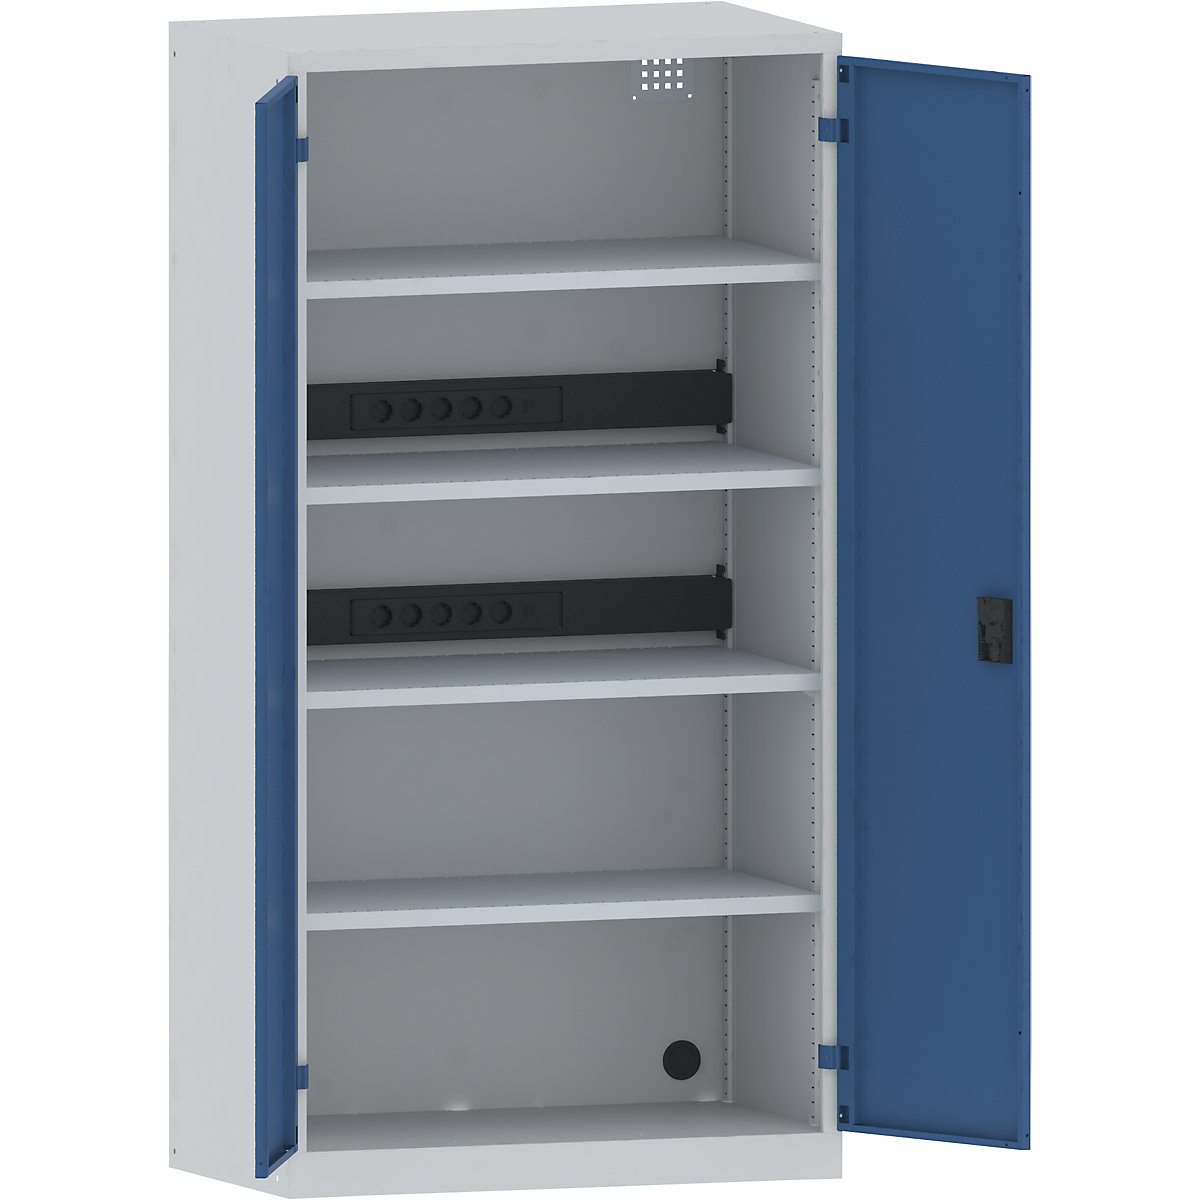 Omara za polnjenje akumulatorjev – LISTA, 4 police, vrata iz polne pločevine, 2 letvi za napeljavo ob strani, sive / modre barve-12